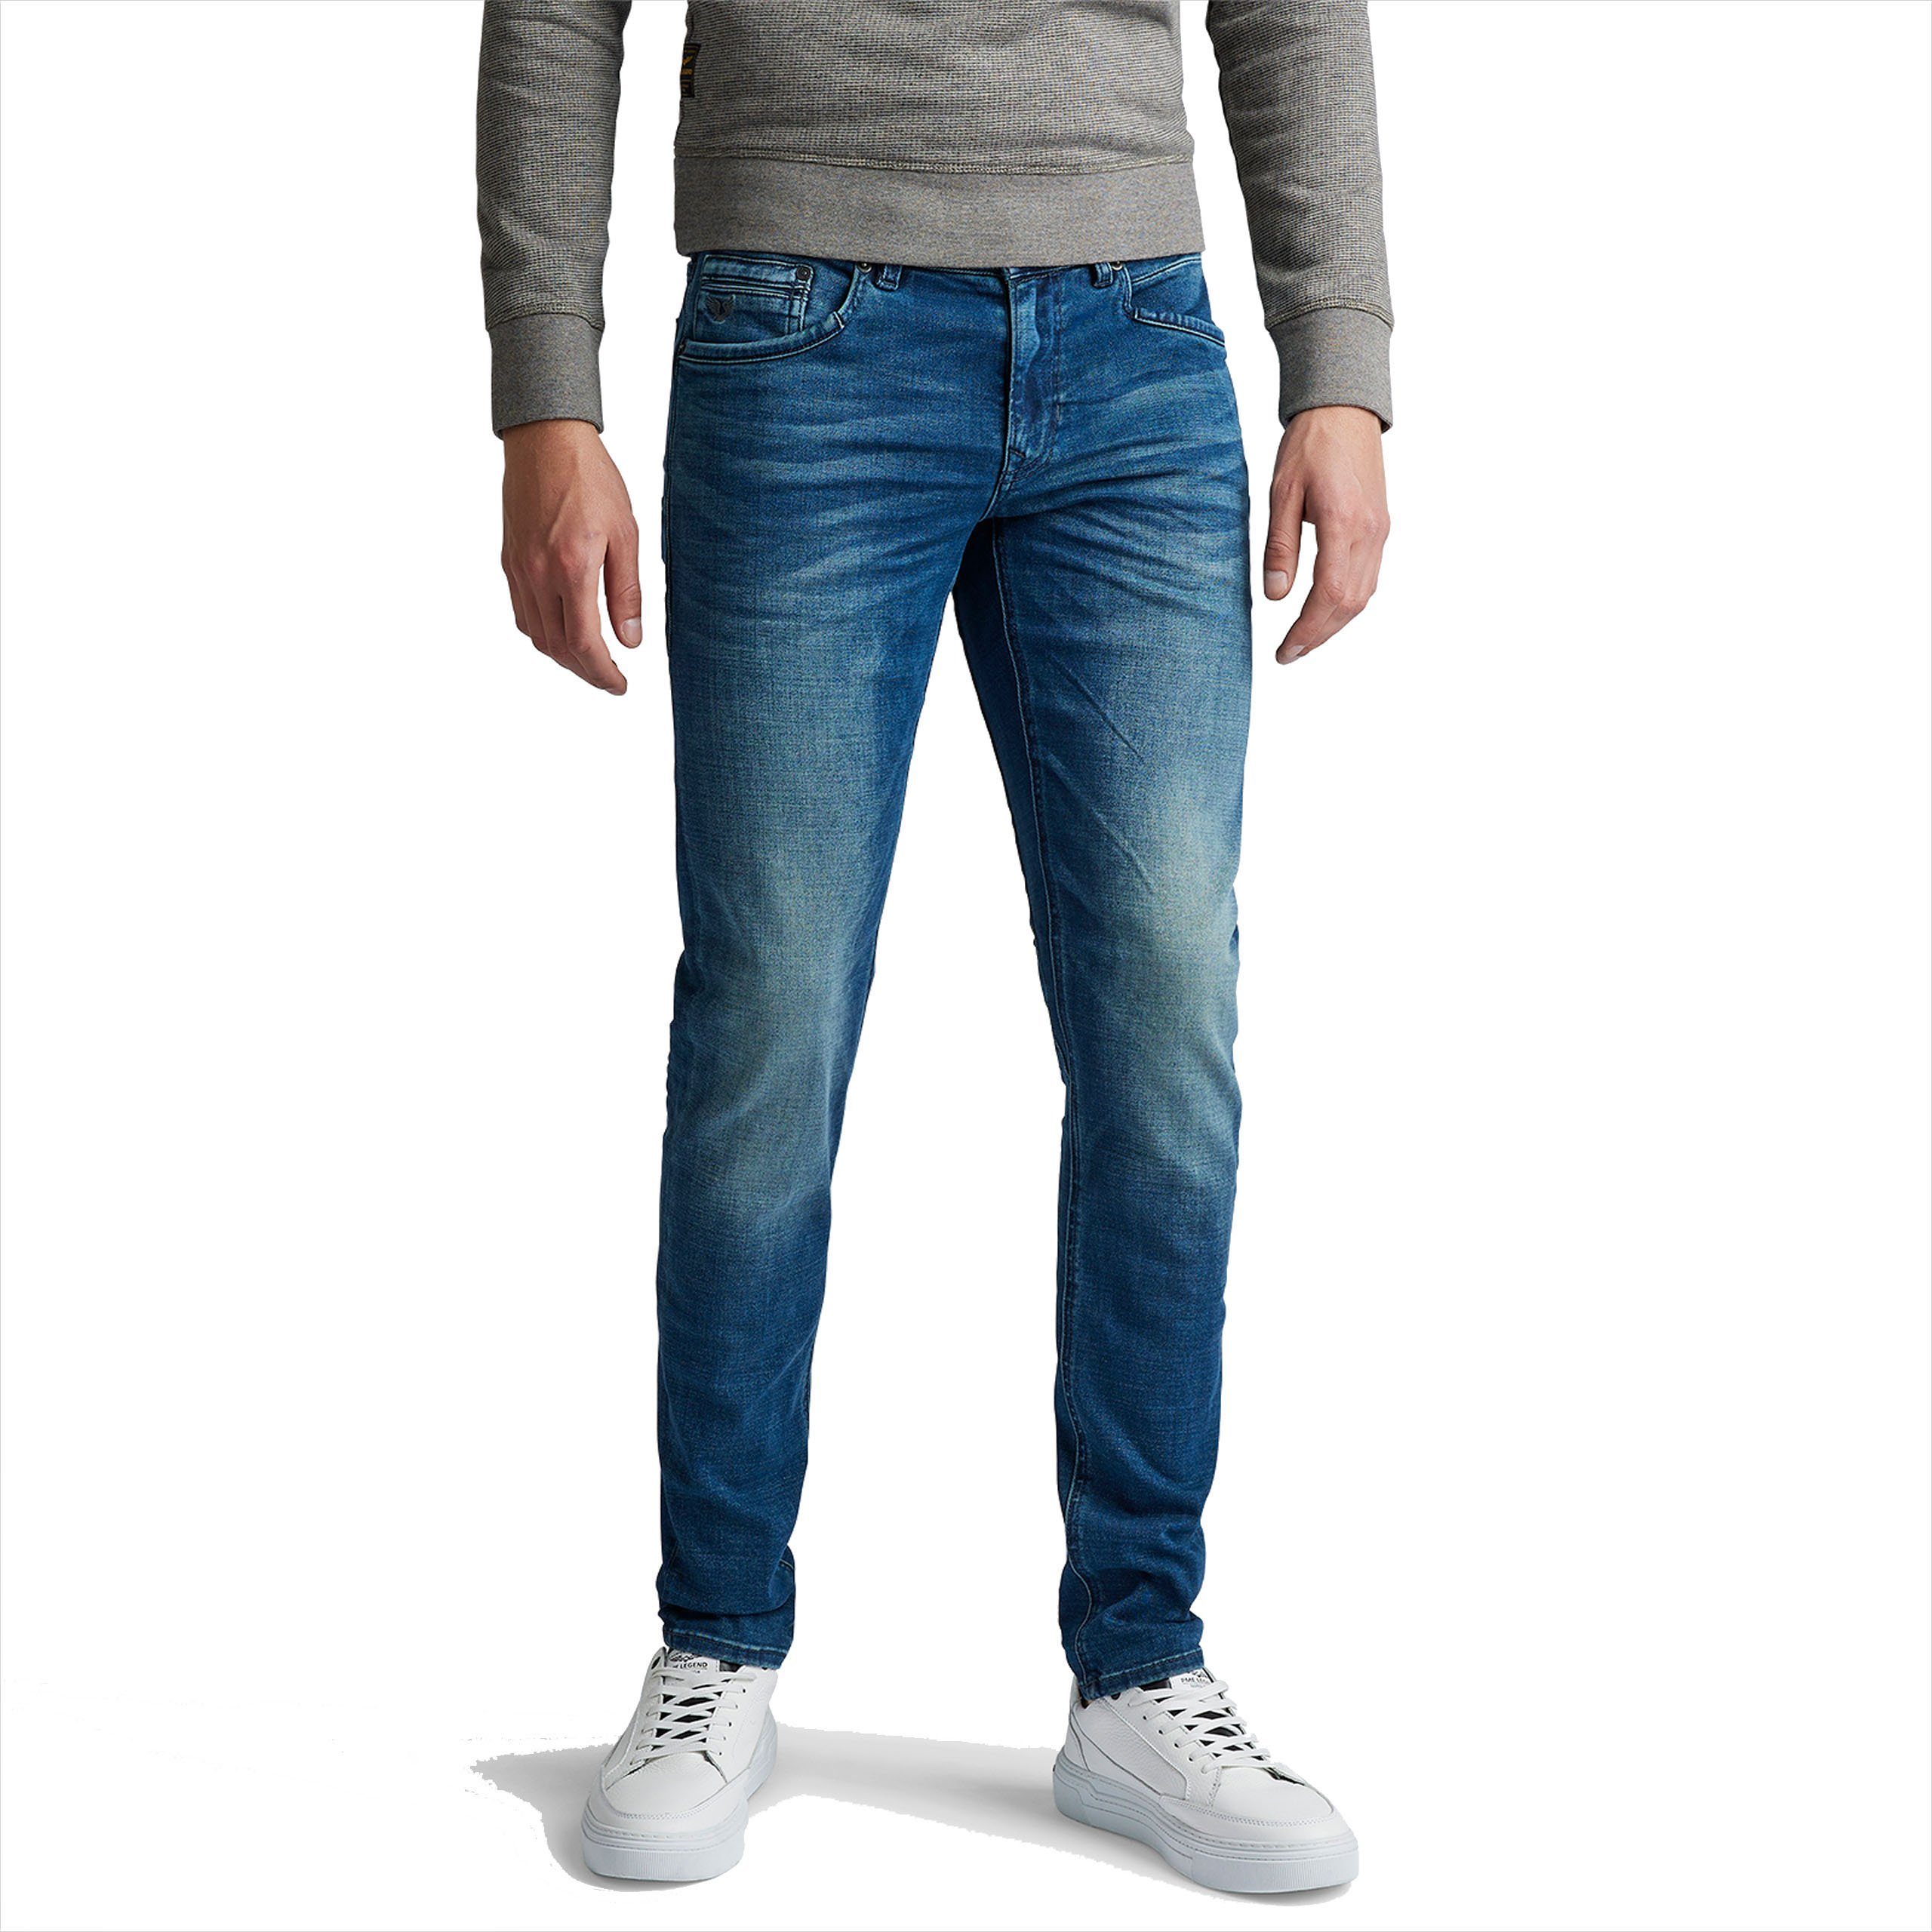 PME LEGEND 5-Pocket-Jeans Tailwheel Slim Fit Jeans Herren 5-Pockets Style